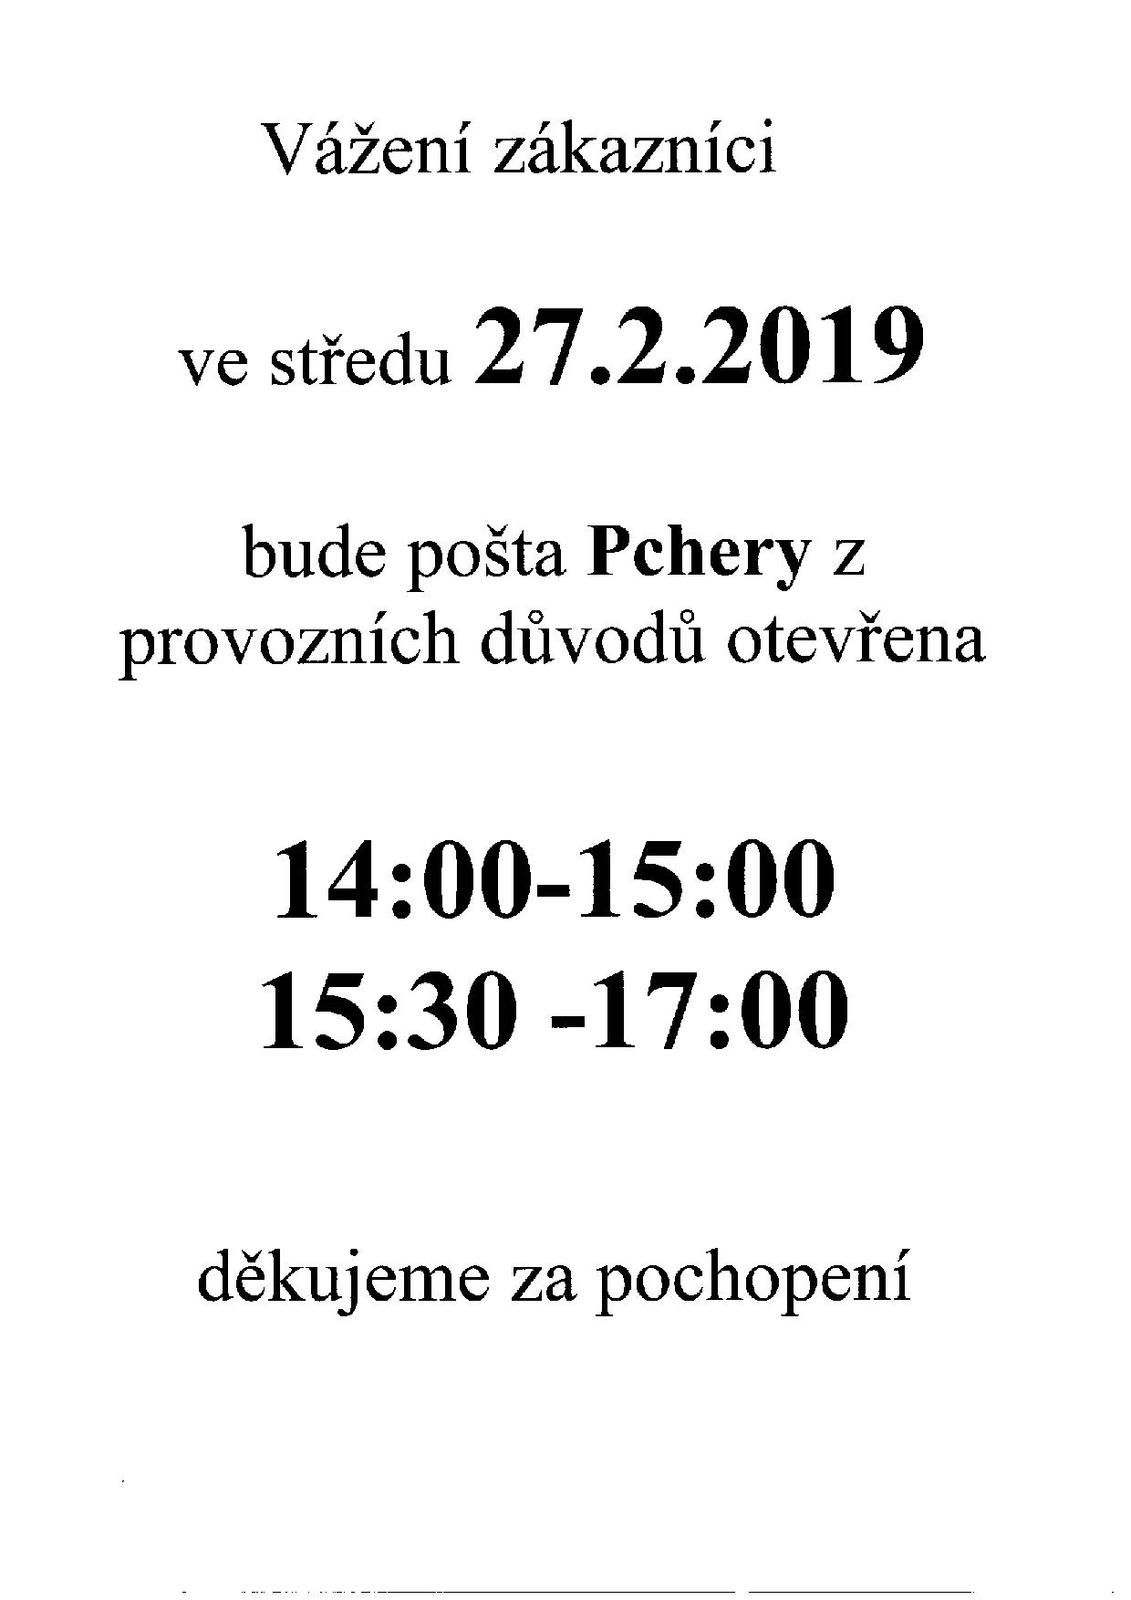 Pošta Pchery- změna otevírací doby dne 27.2.2019.jpg